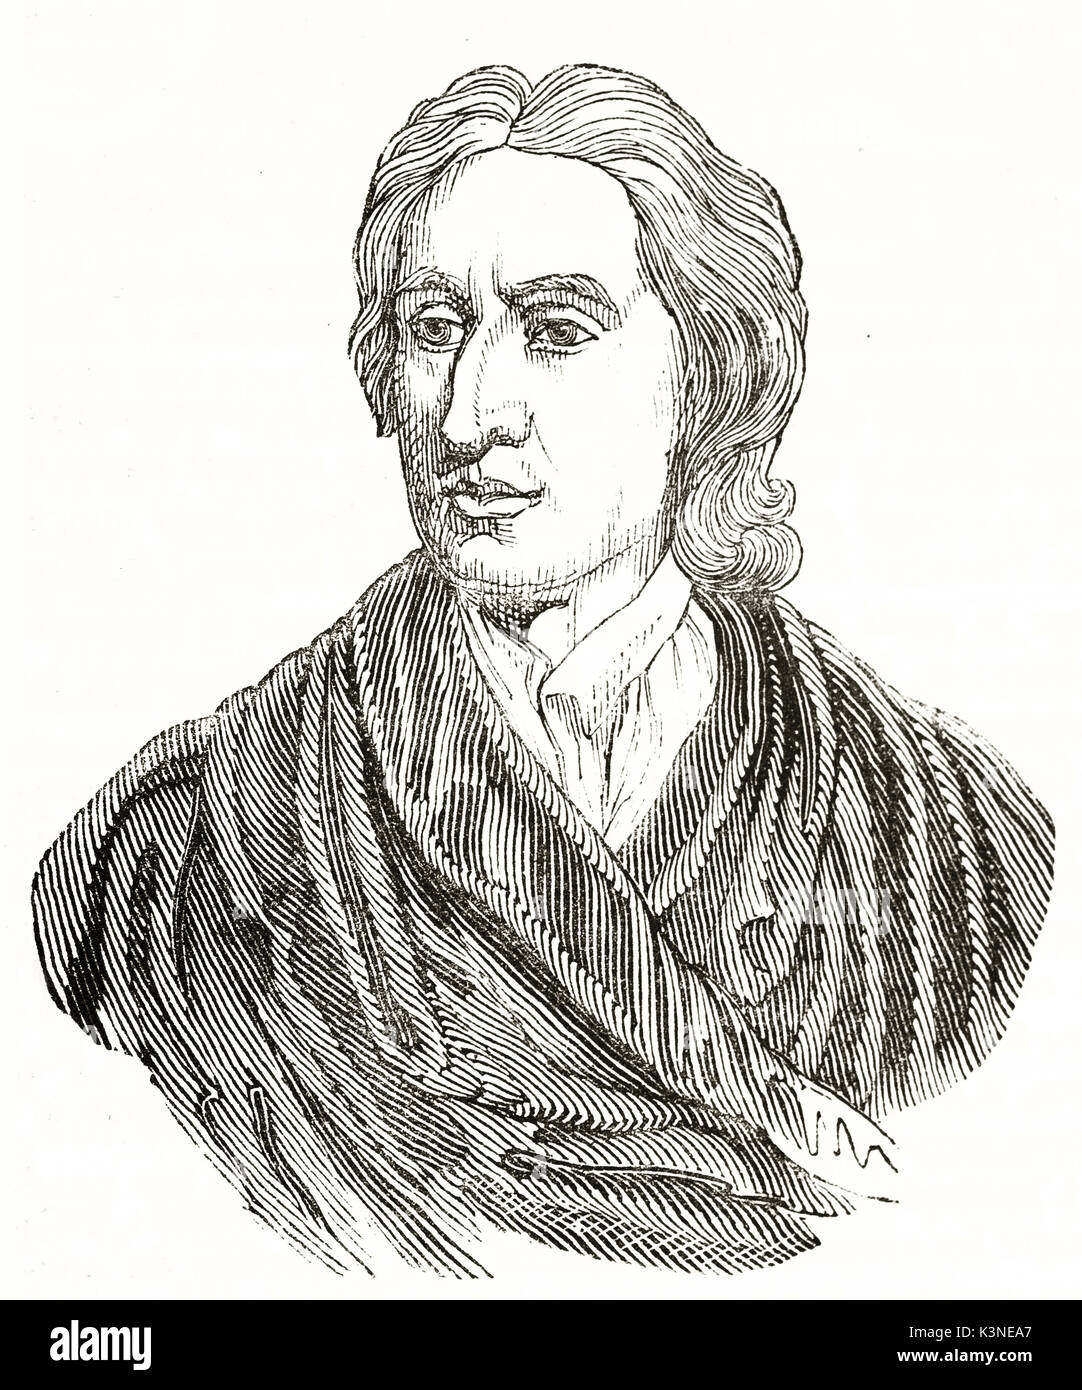 Ancien portrait gravé faite avec une berline ordinaire de John Locke (1632 - 1704) philosophe et médecin anglais connu comme le père du libéralisme. publié le magasin pittoresque Paris 1839 Banque D'Images